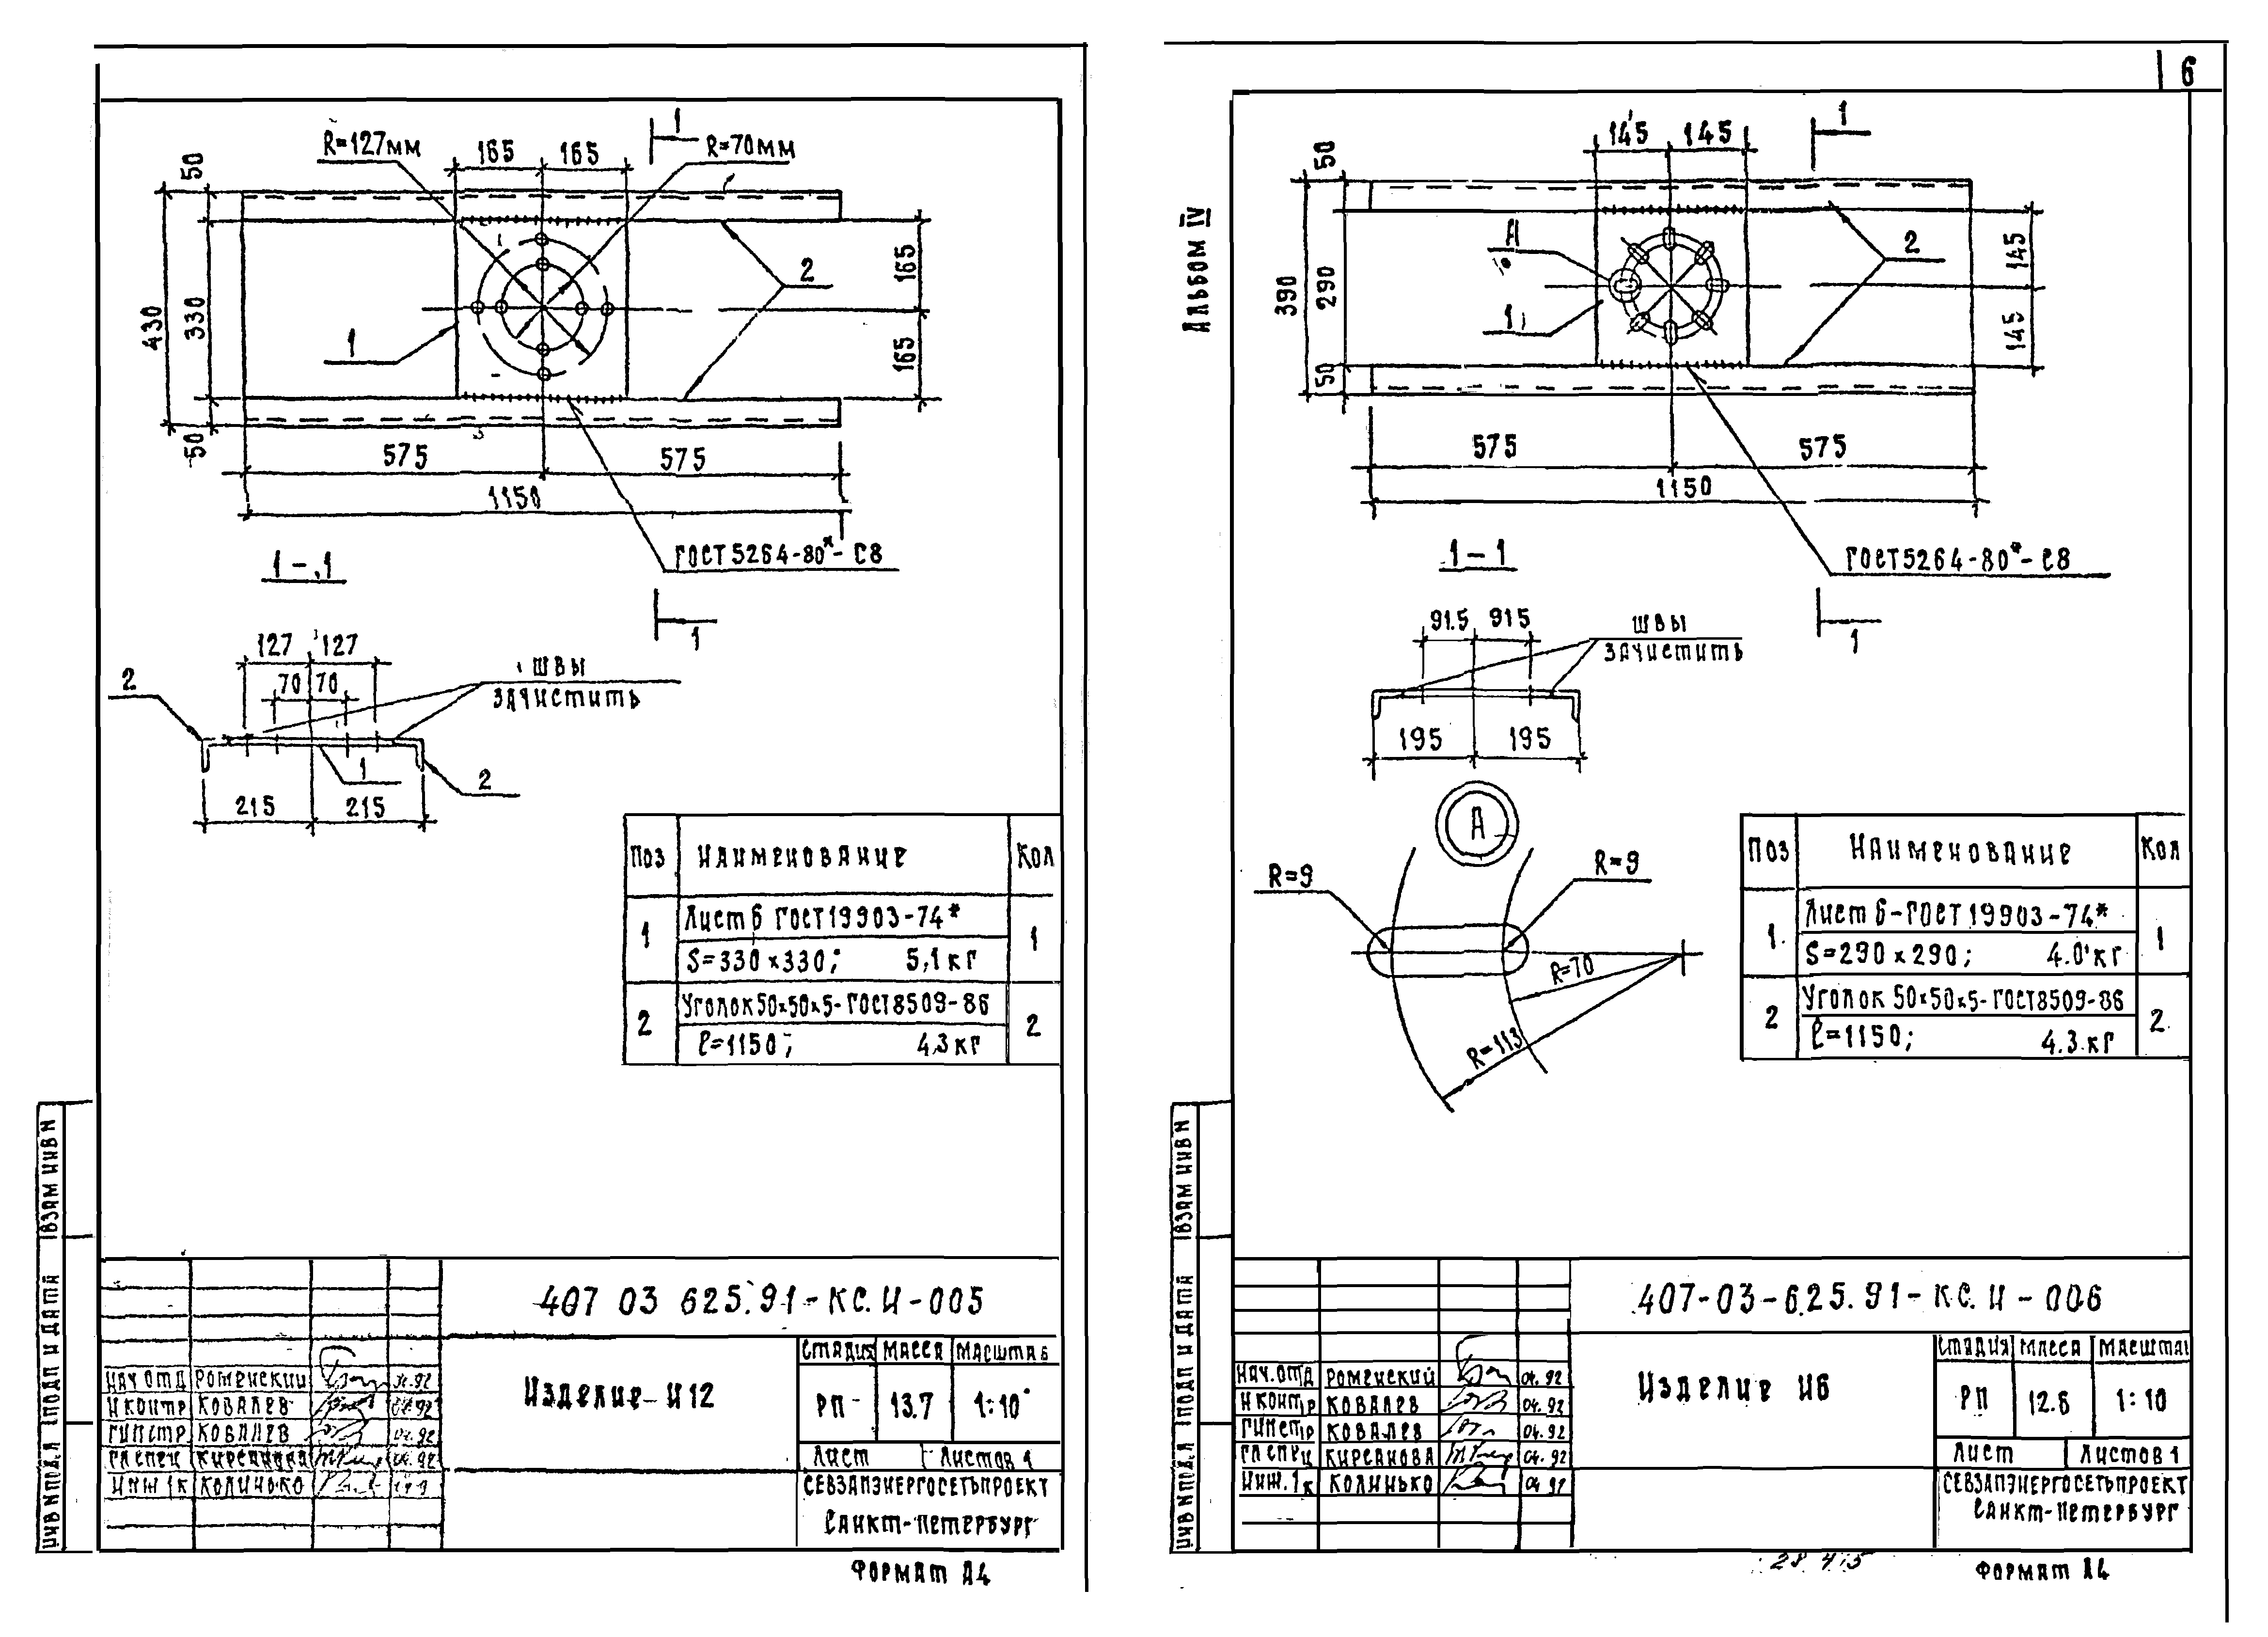 Типовые материалы для проектирования 407-03-625.91